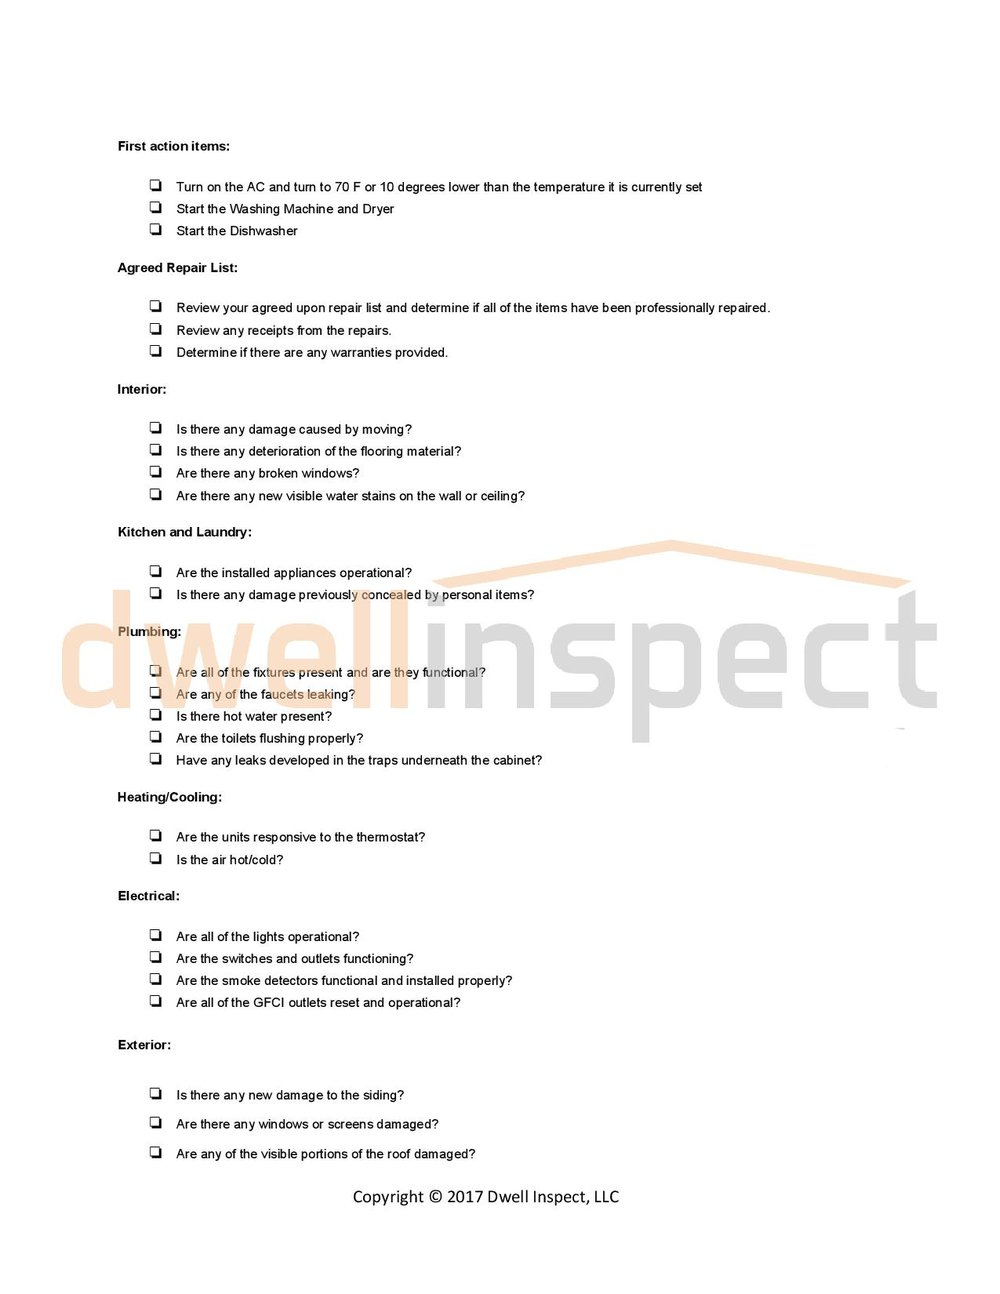 Dwell Inspect Arizona - Final Walkthrough Checklist Intended For Final Walk Through Checklist Template With Regard To Final Walk Through Checklist Template